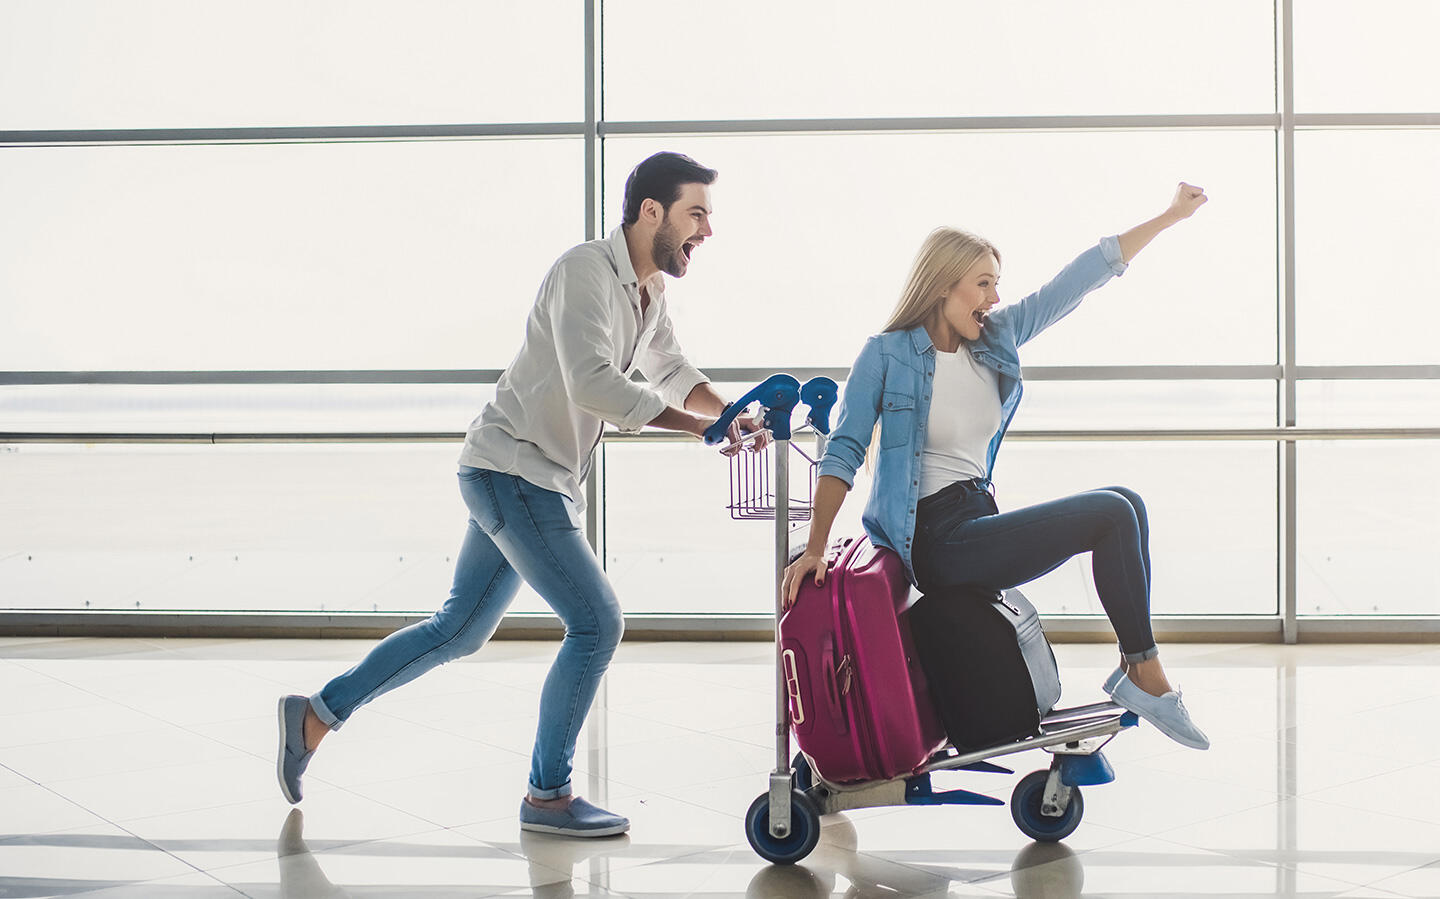 Una pareja feliz en el aeropuerto de Orly, el hombre empujando a la mujer en un carrito de equipaje